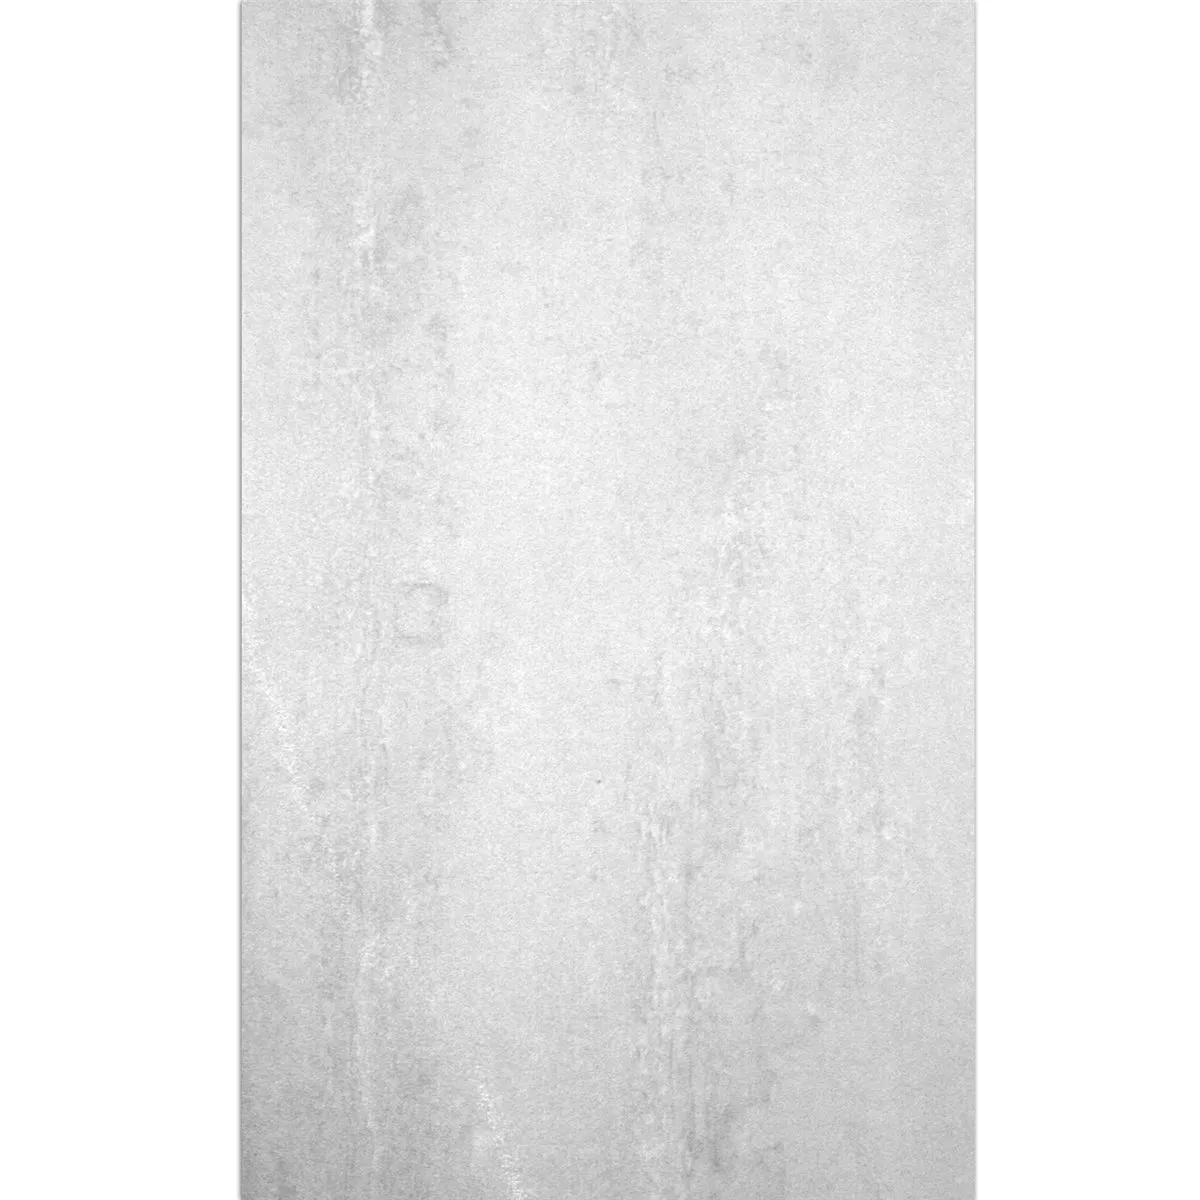 Πλακάκια Δαπέδου Madeira Ασπρο Μερικώς Γυαλισμένο 60x120cm